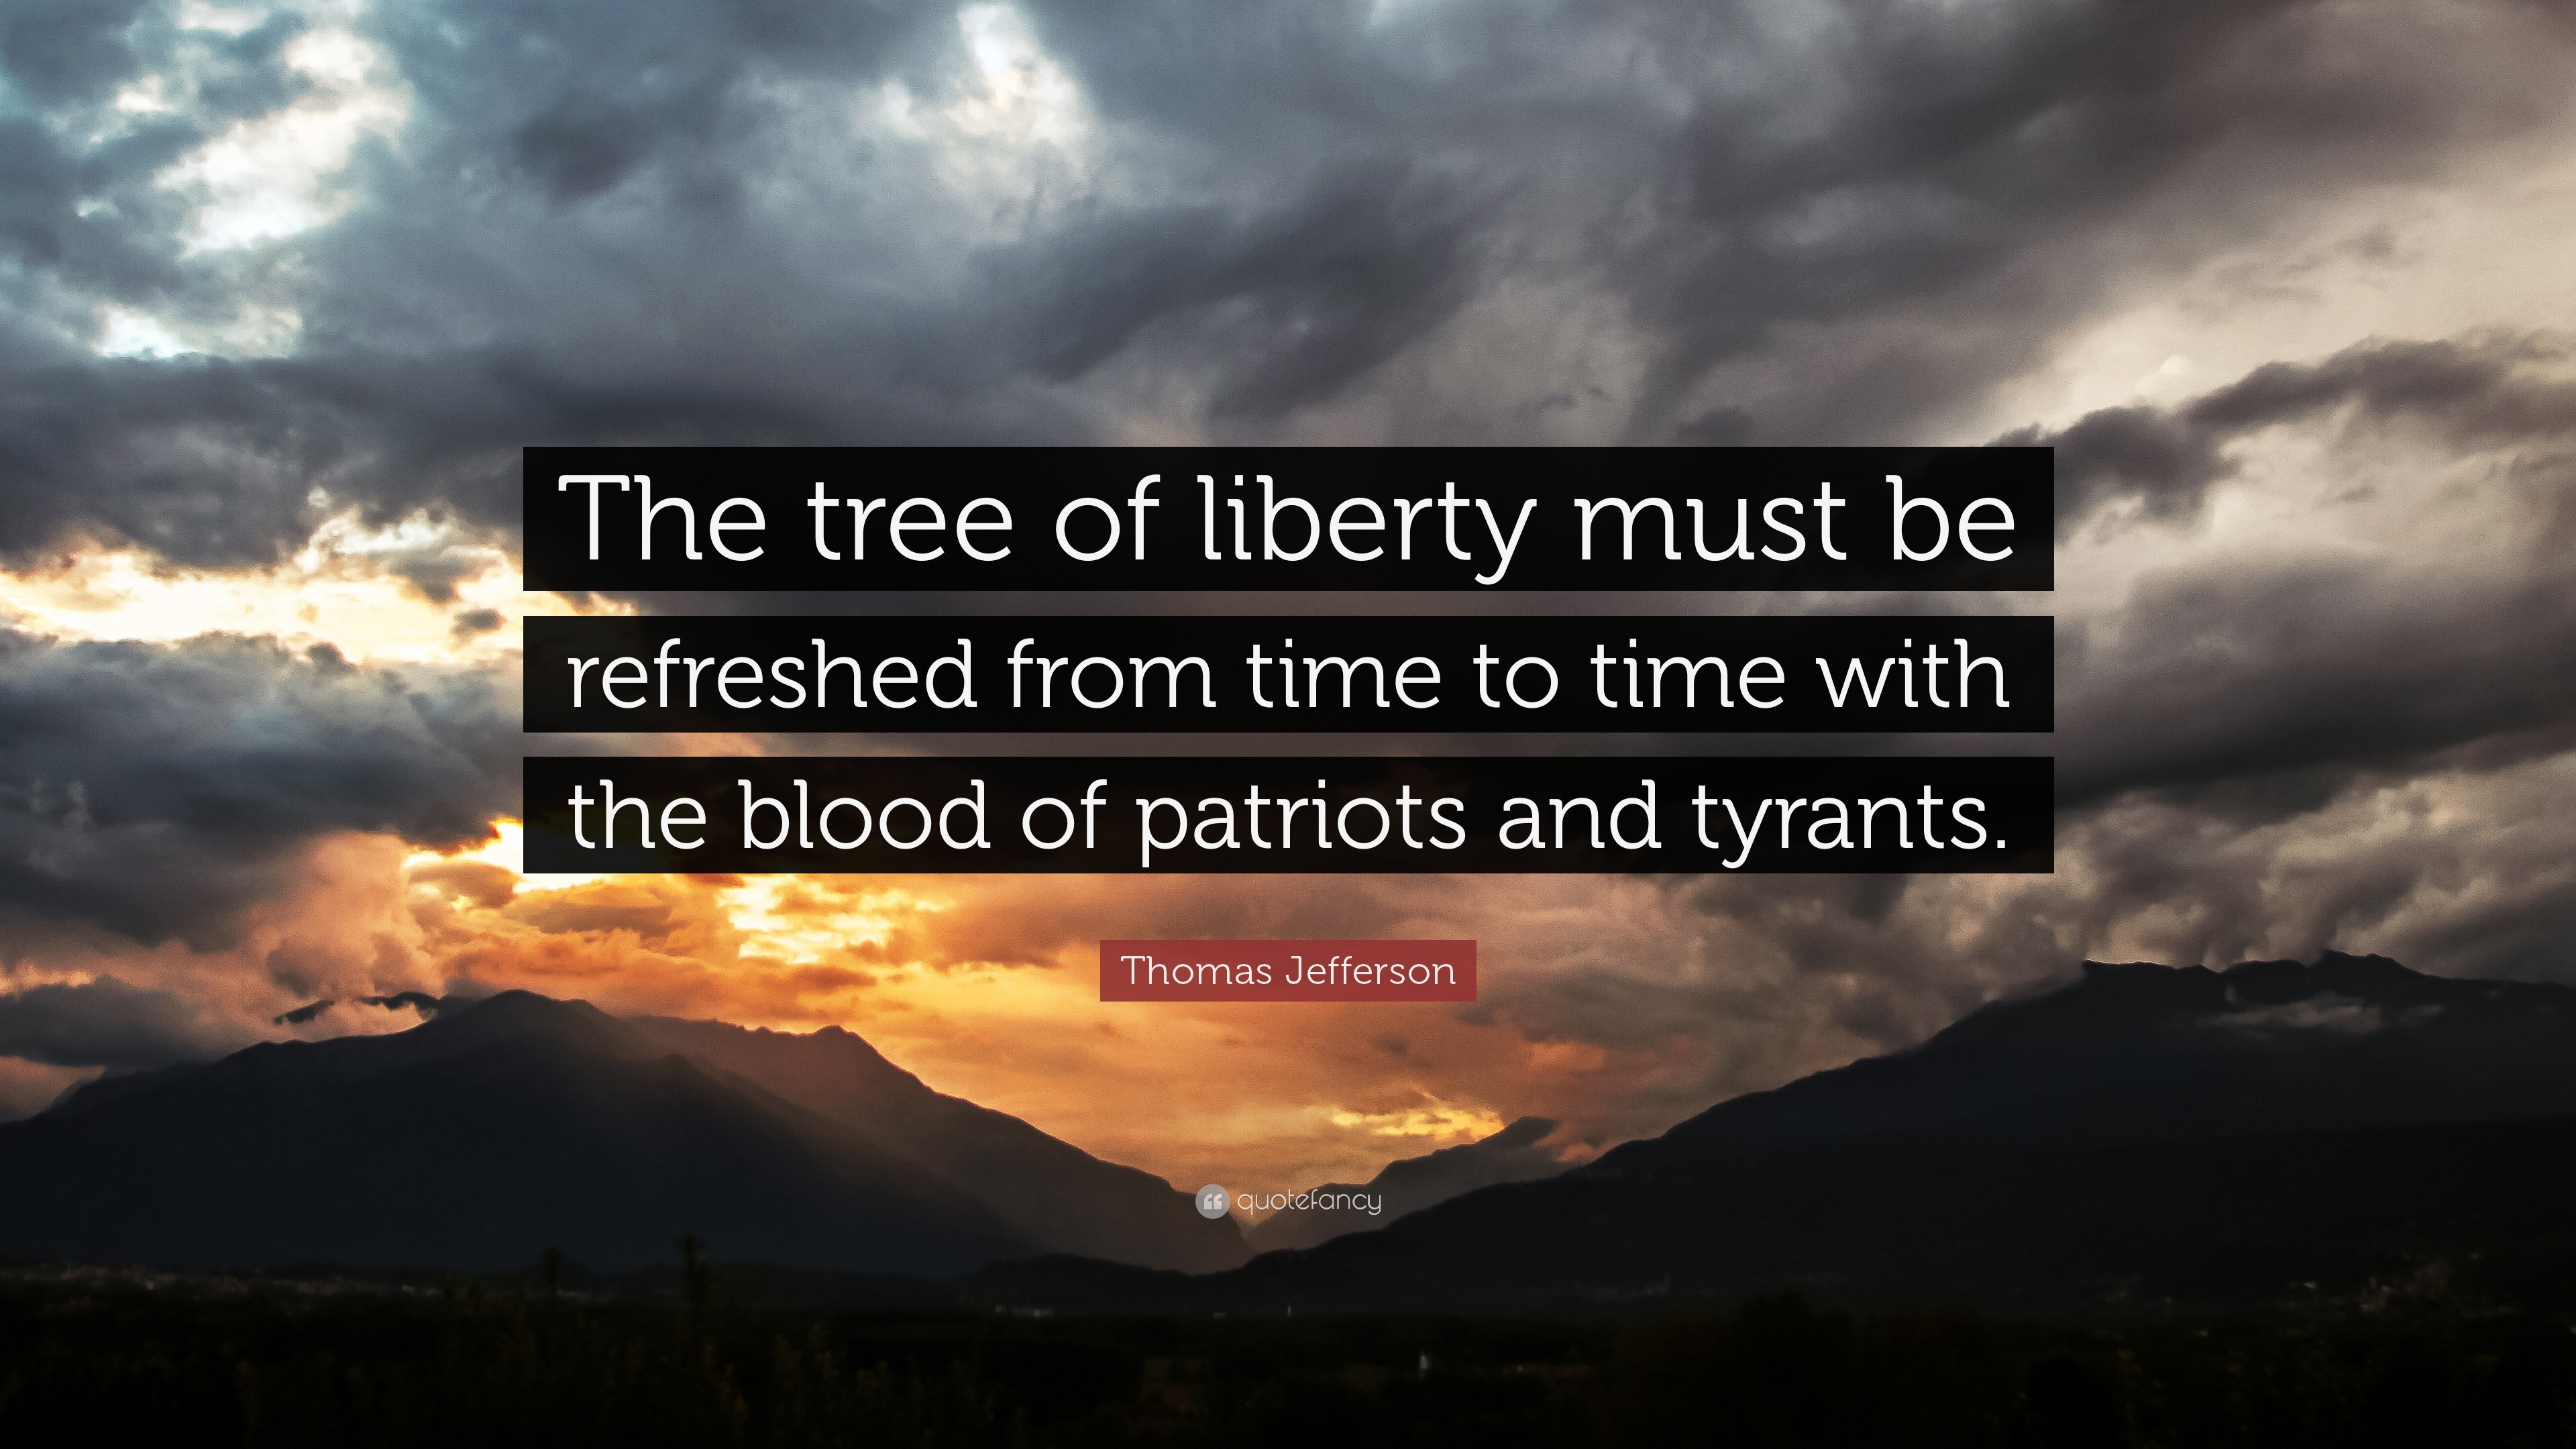 Thomas Jefferson: “A árvore da liberdade deve ser renovada de tempos em tempos com a